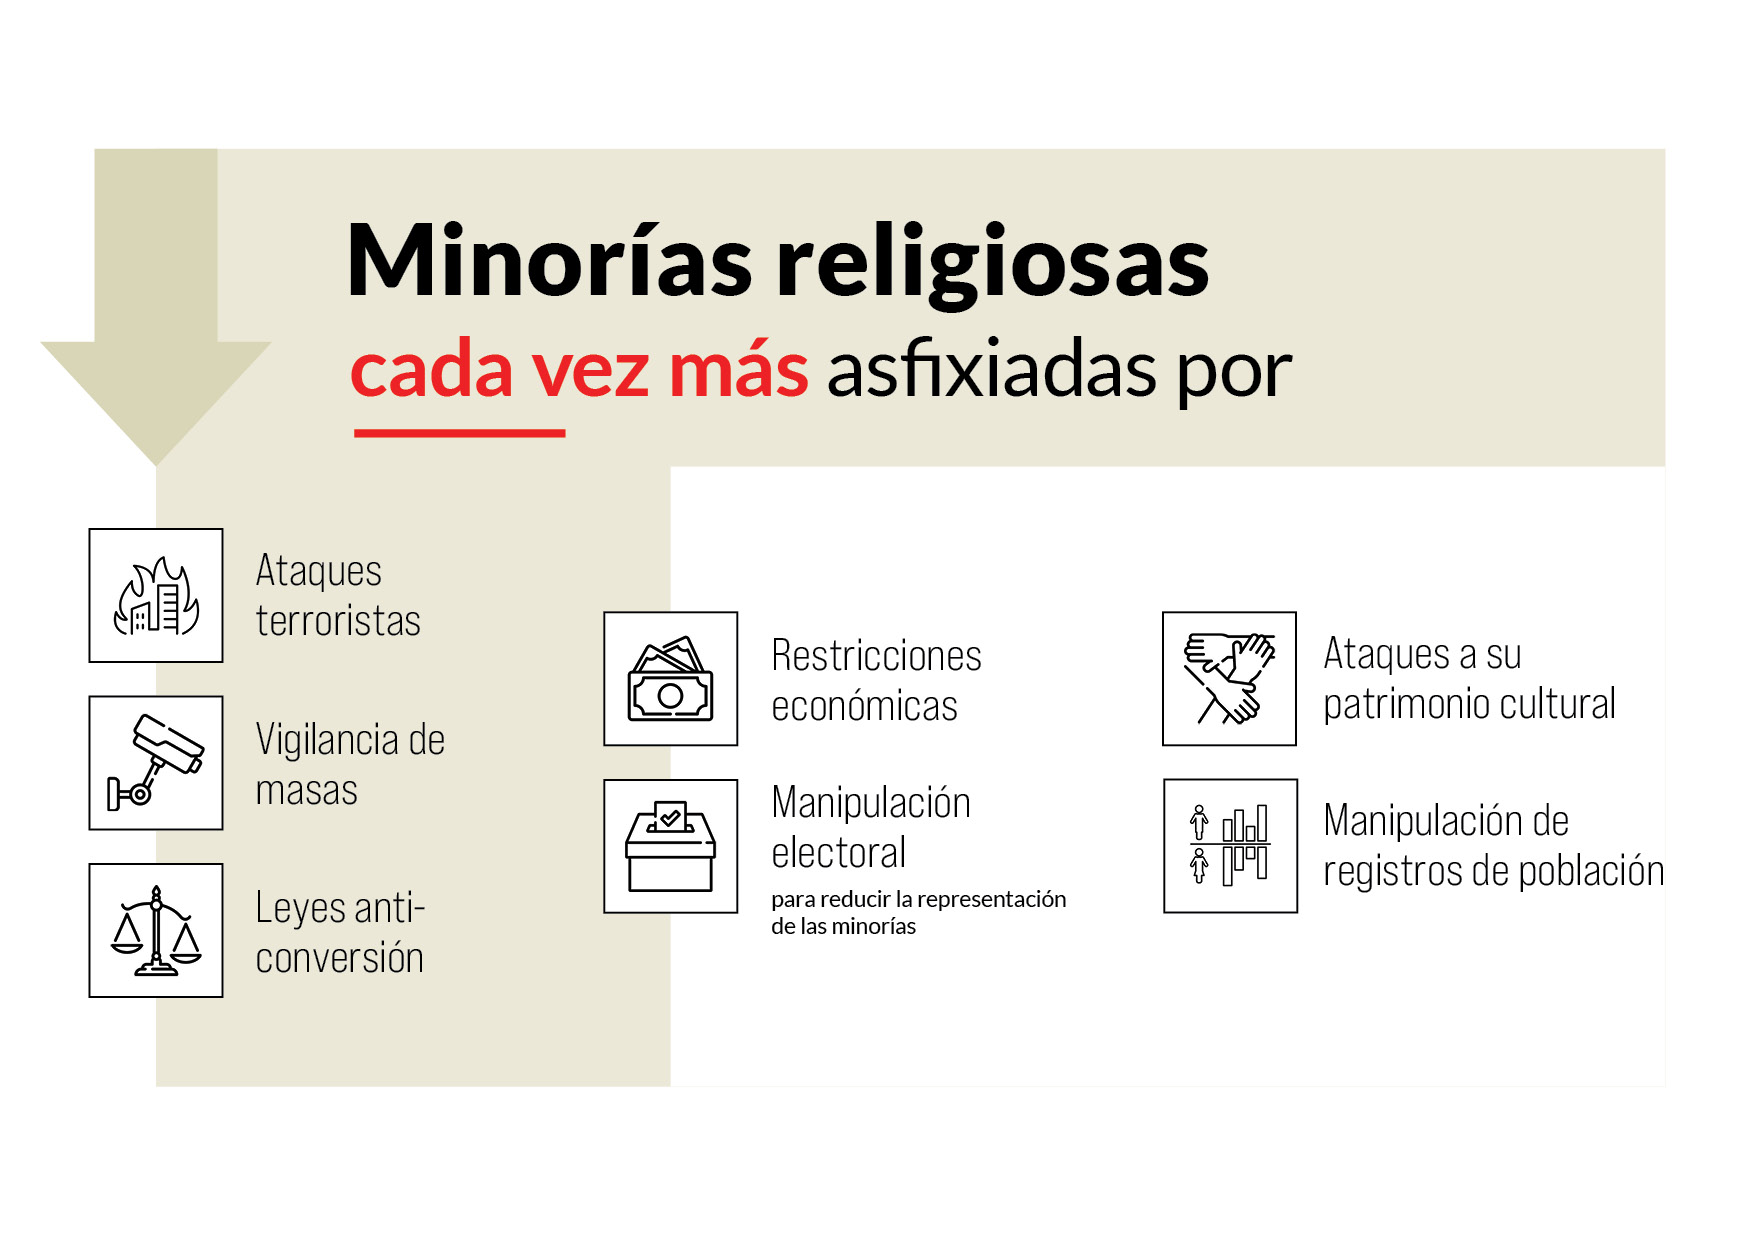 Informe de Libertad Religiosa Infografía